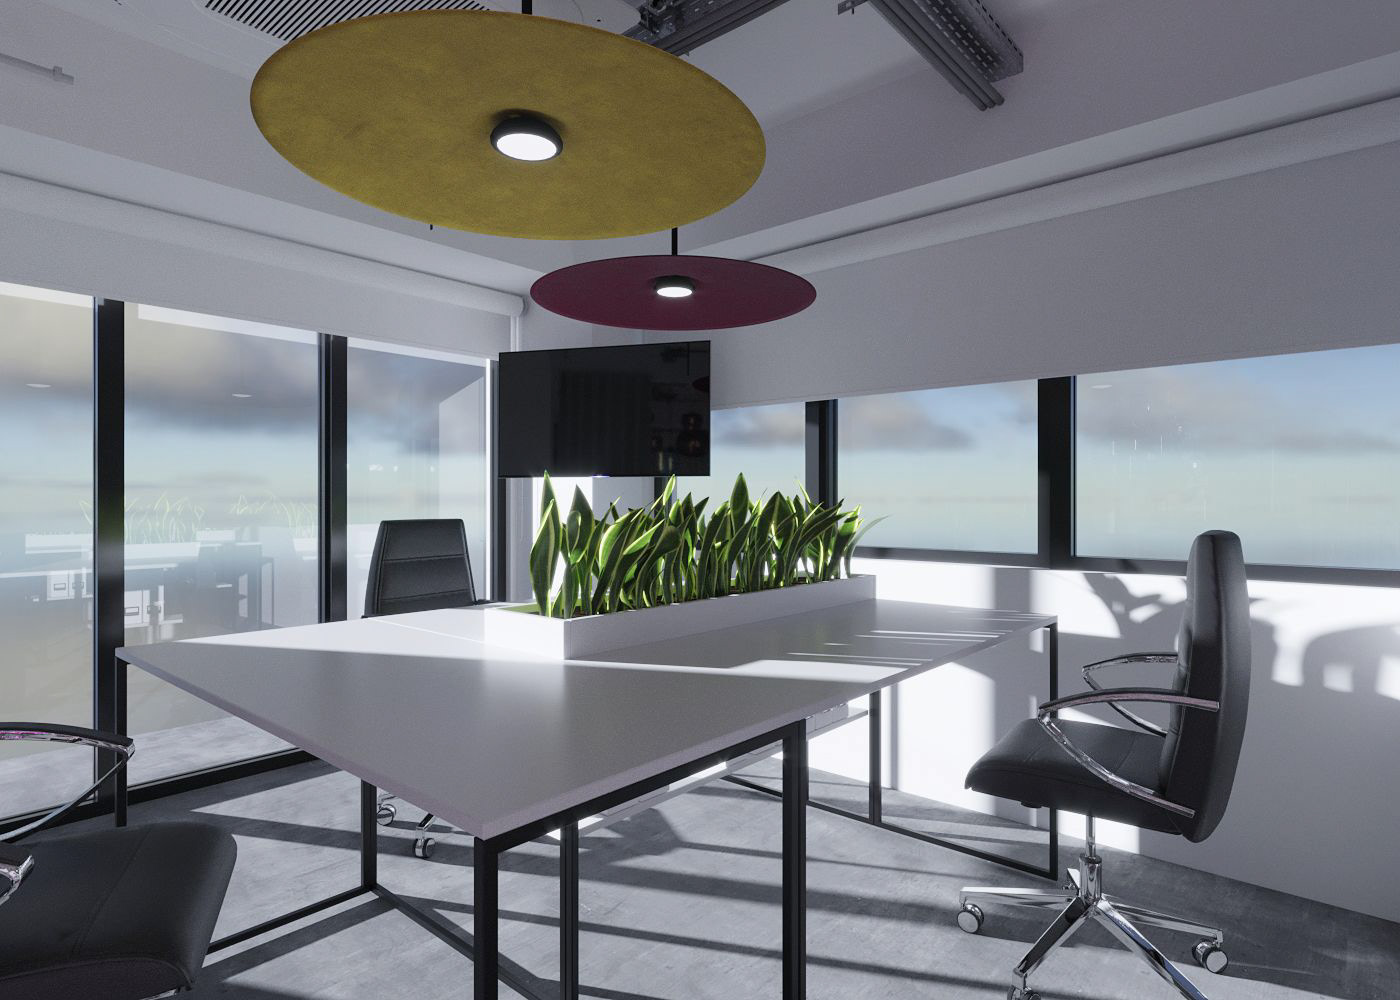 interior design  Office Design officedesign OfficeInterior officedesigner officeinteriordesign officeinteriors